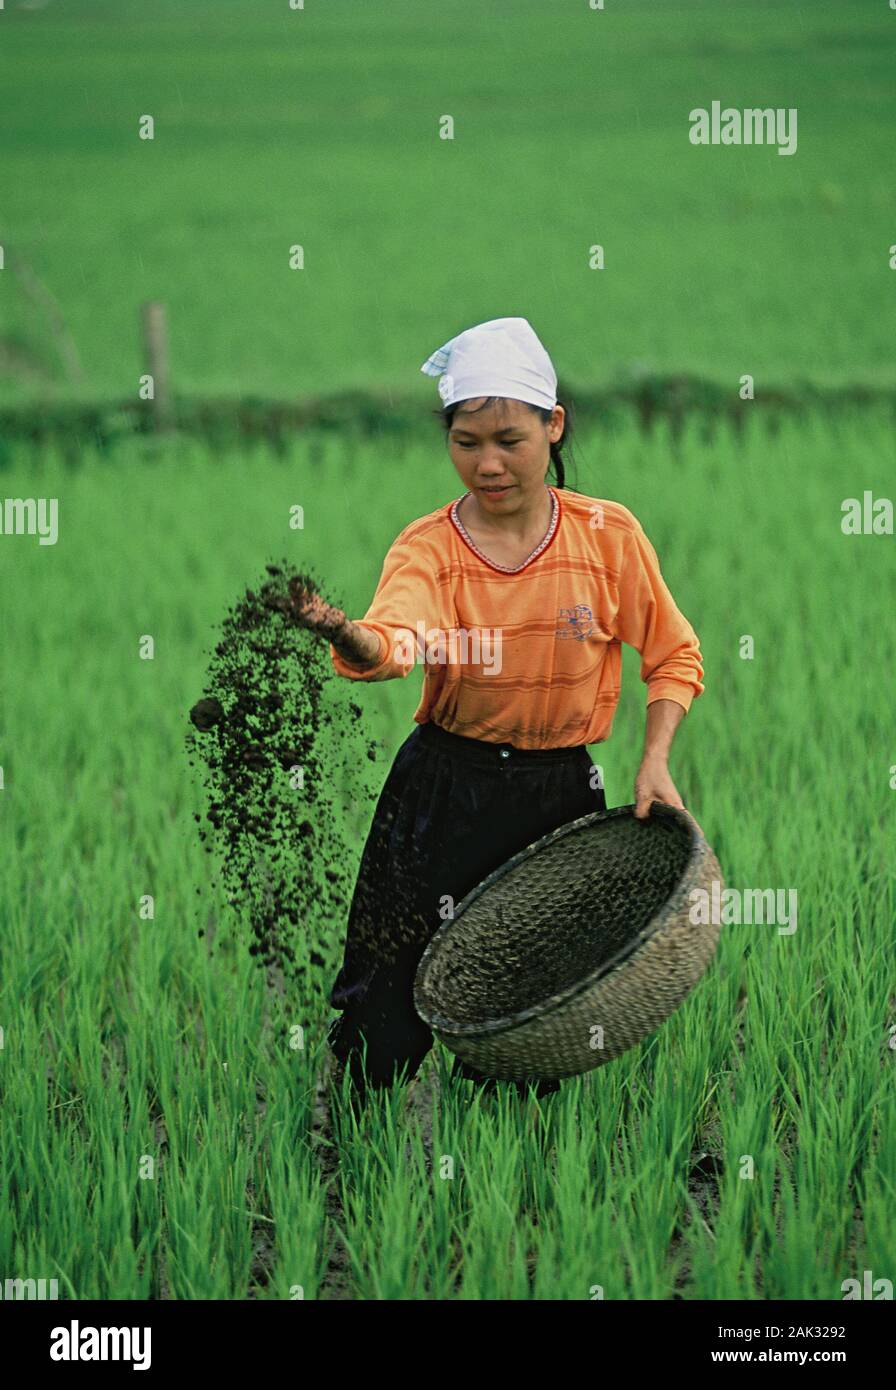 Ein Landarbeiter Düngung ein Reisfeld im Norden von Vietnam. Vietnam ist heute der zweitgrößte Exporteur von Reis. (Undatiertes Foto) | Verwendung worl Stockfoto